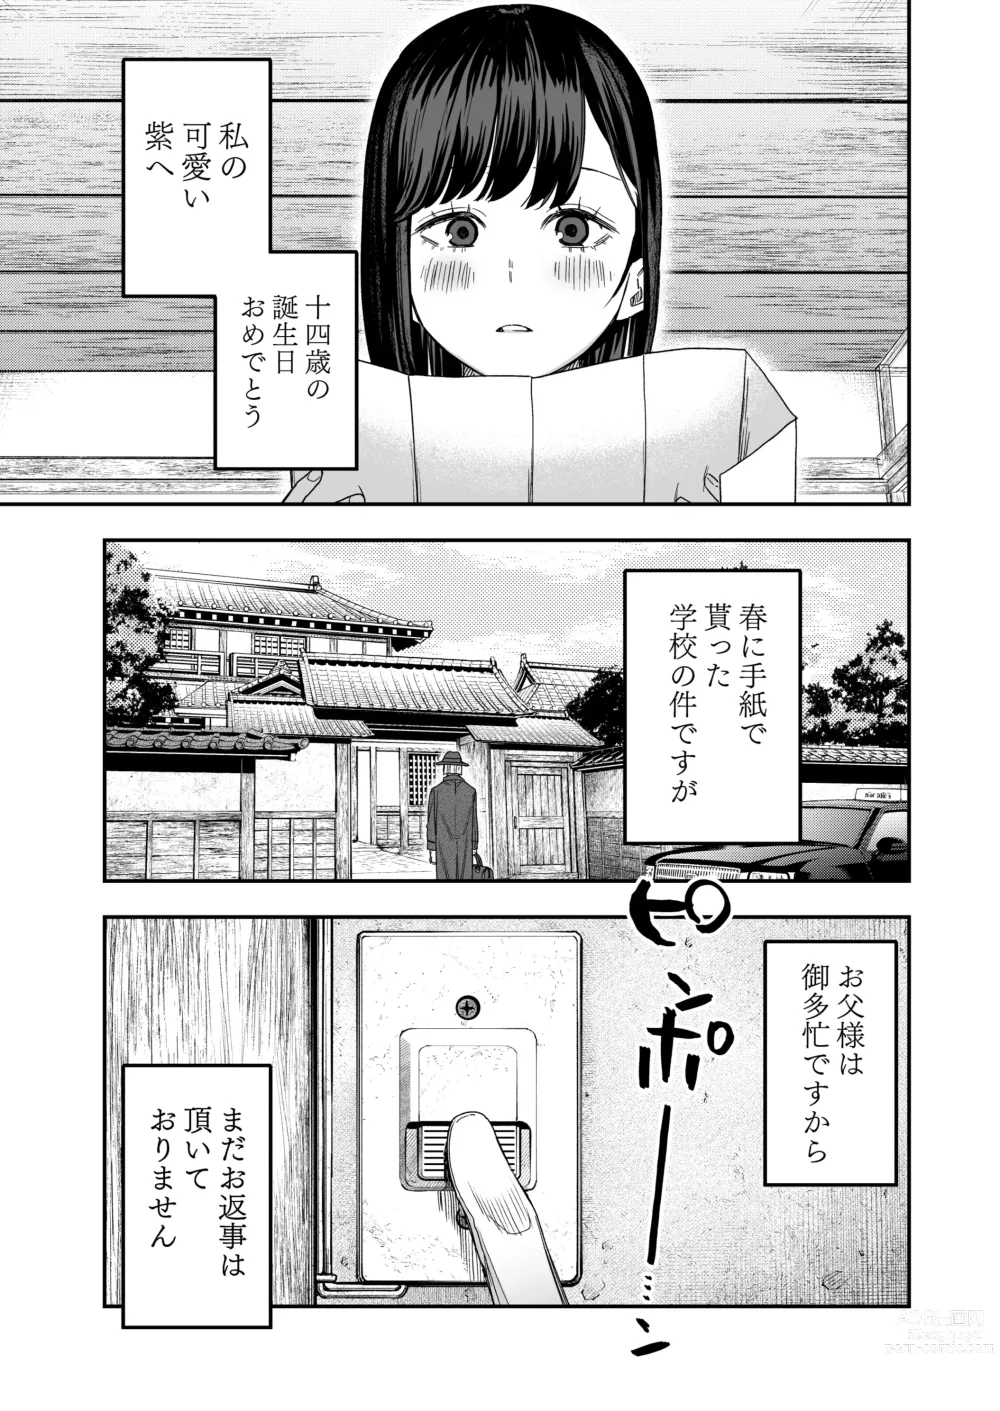 Page 2 of doujinshi Hachiroku Sou - Ieori to Hana Katajikena no Yome